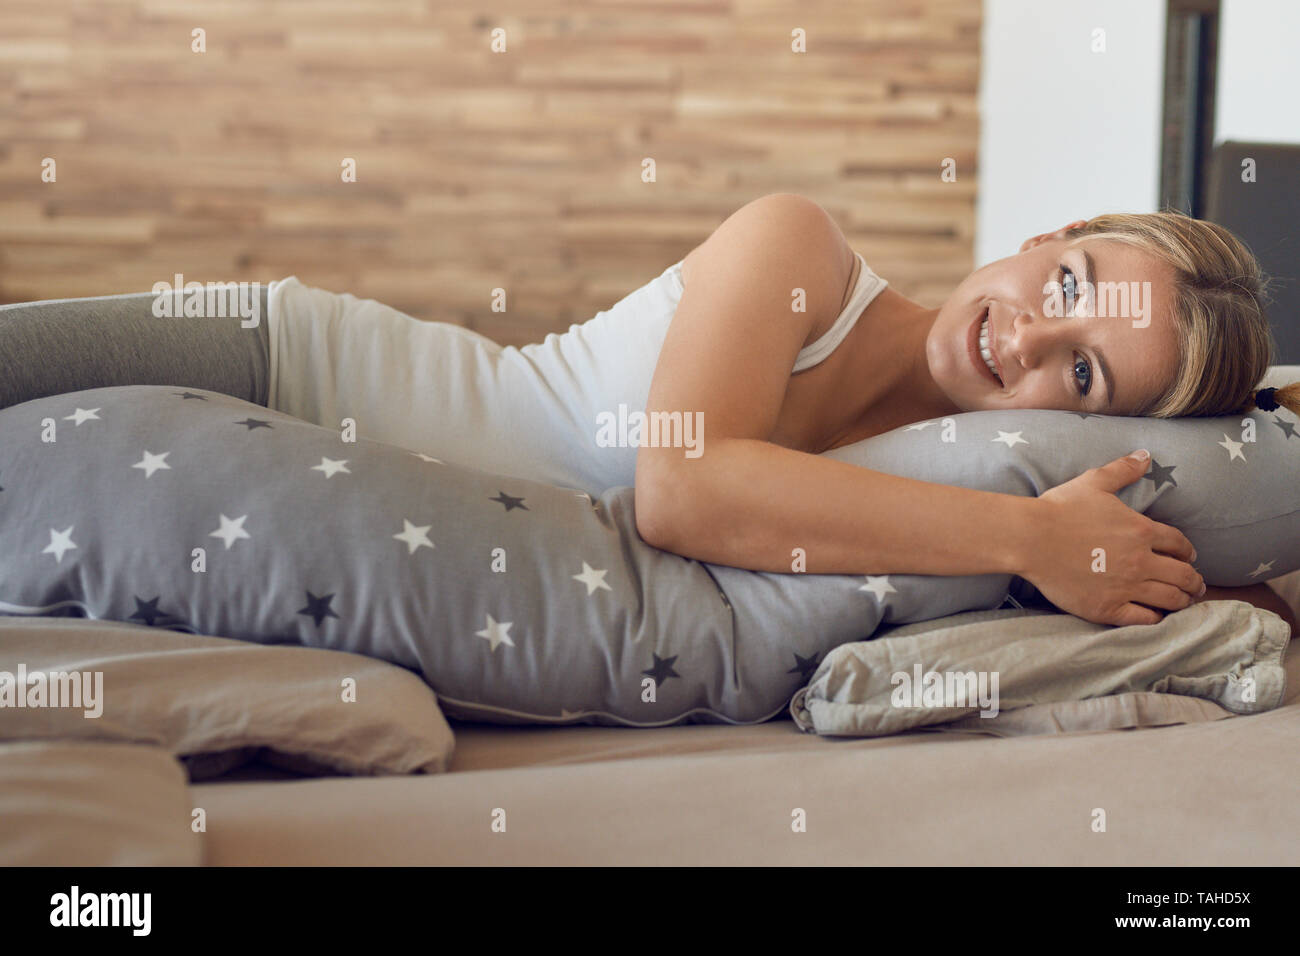 Heureux sain jeune femme enceinte se reposant sur un lit à l'aide d'une longue spéciale oreiller comme un soutien à la recherche à l'appareil photo avec un beau sourire amical Banque D'Images